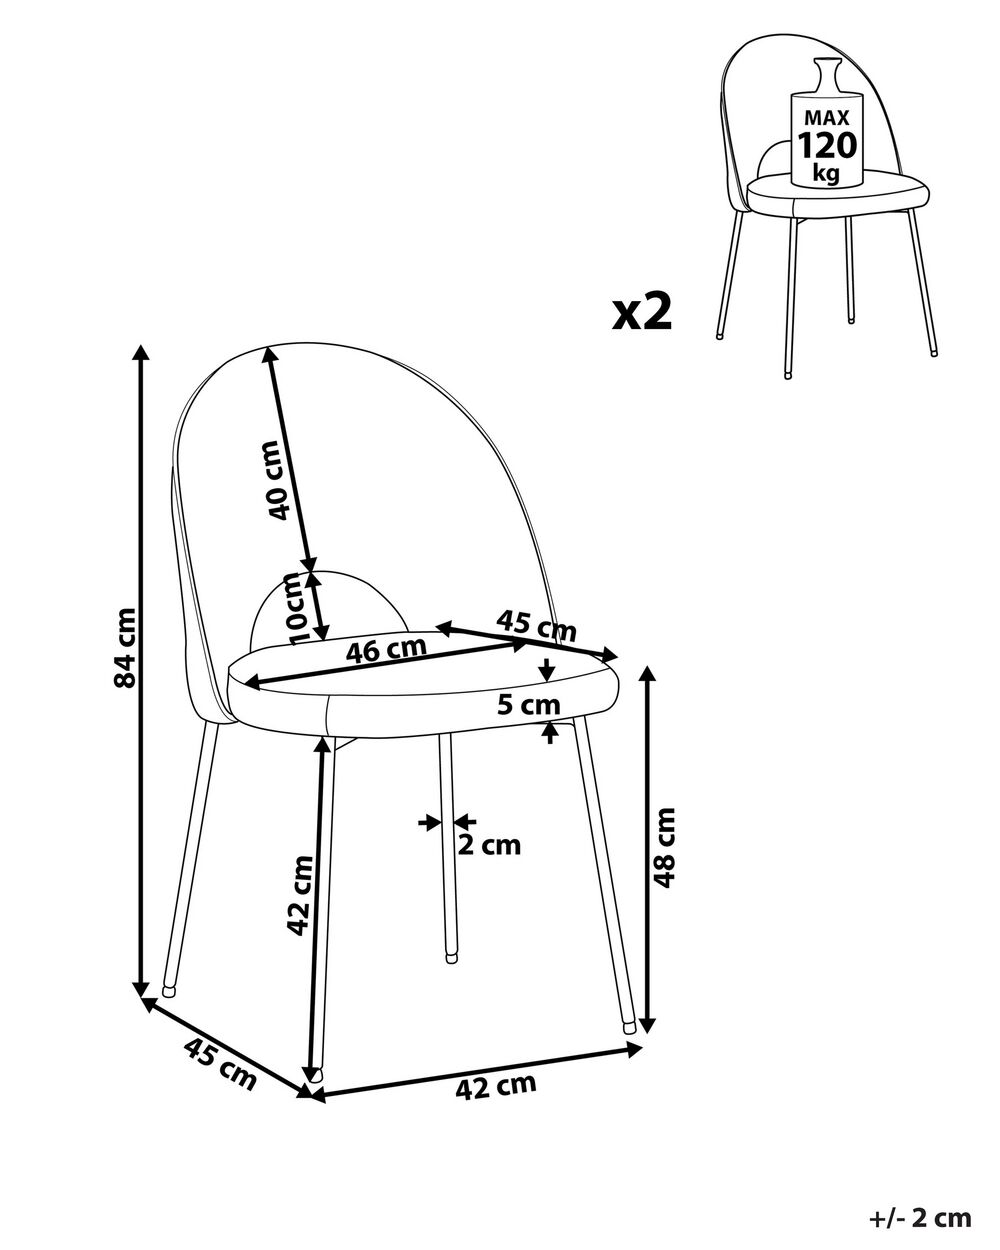 Conjunto de 2 sillas de comedor de terciopelo negro COVELO 